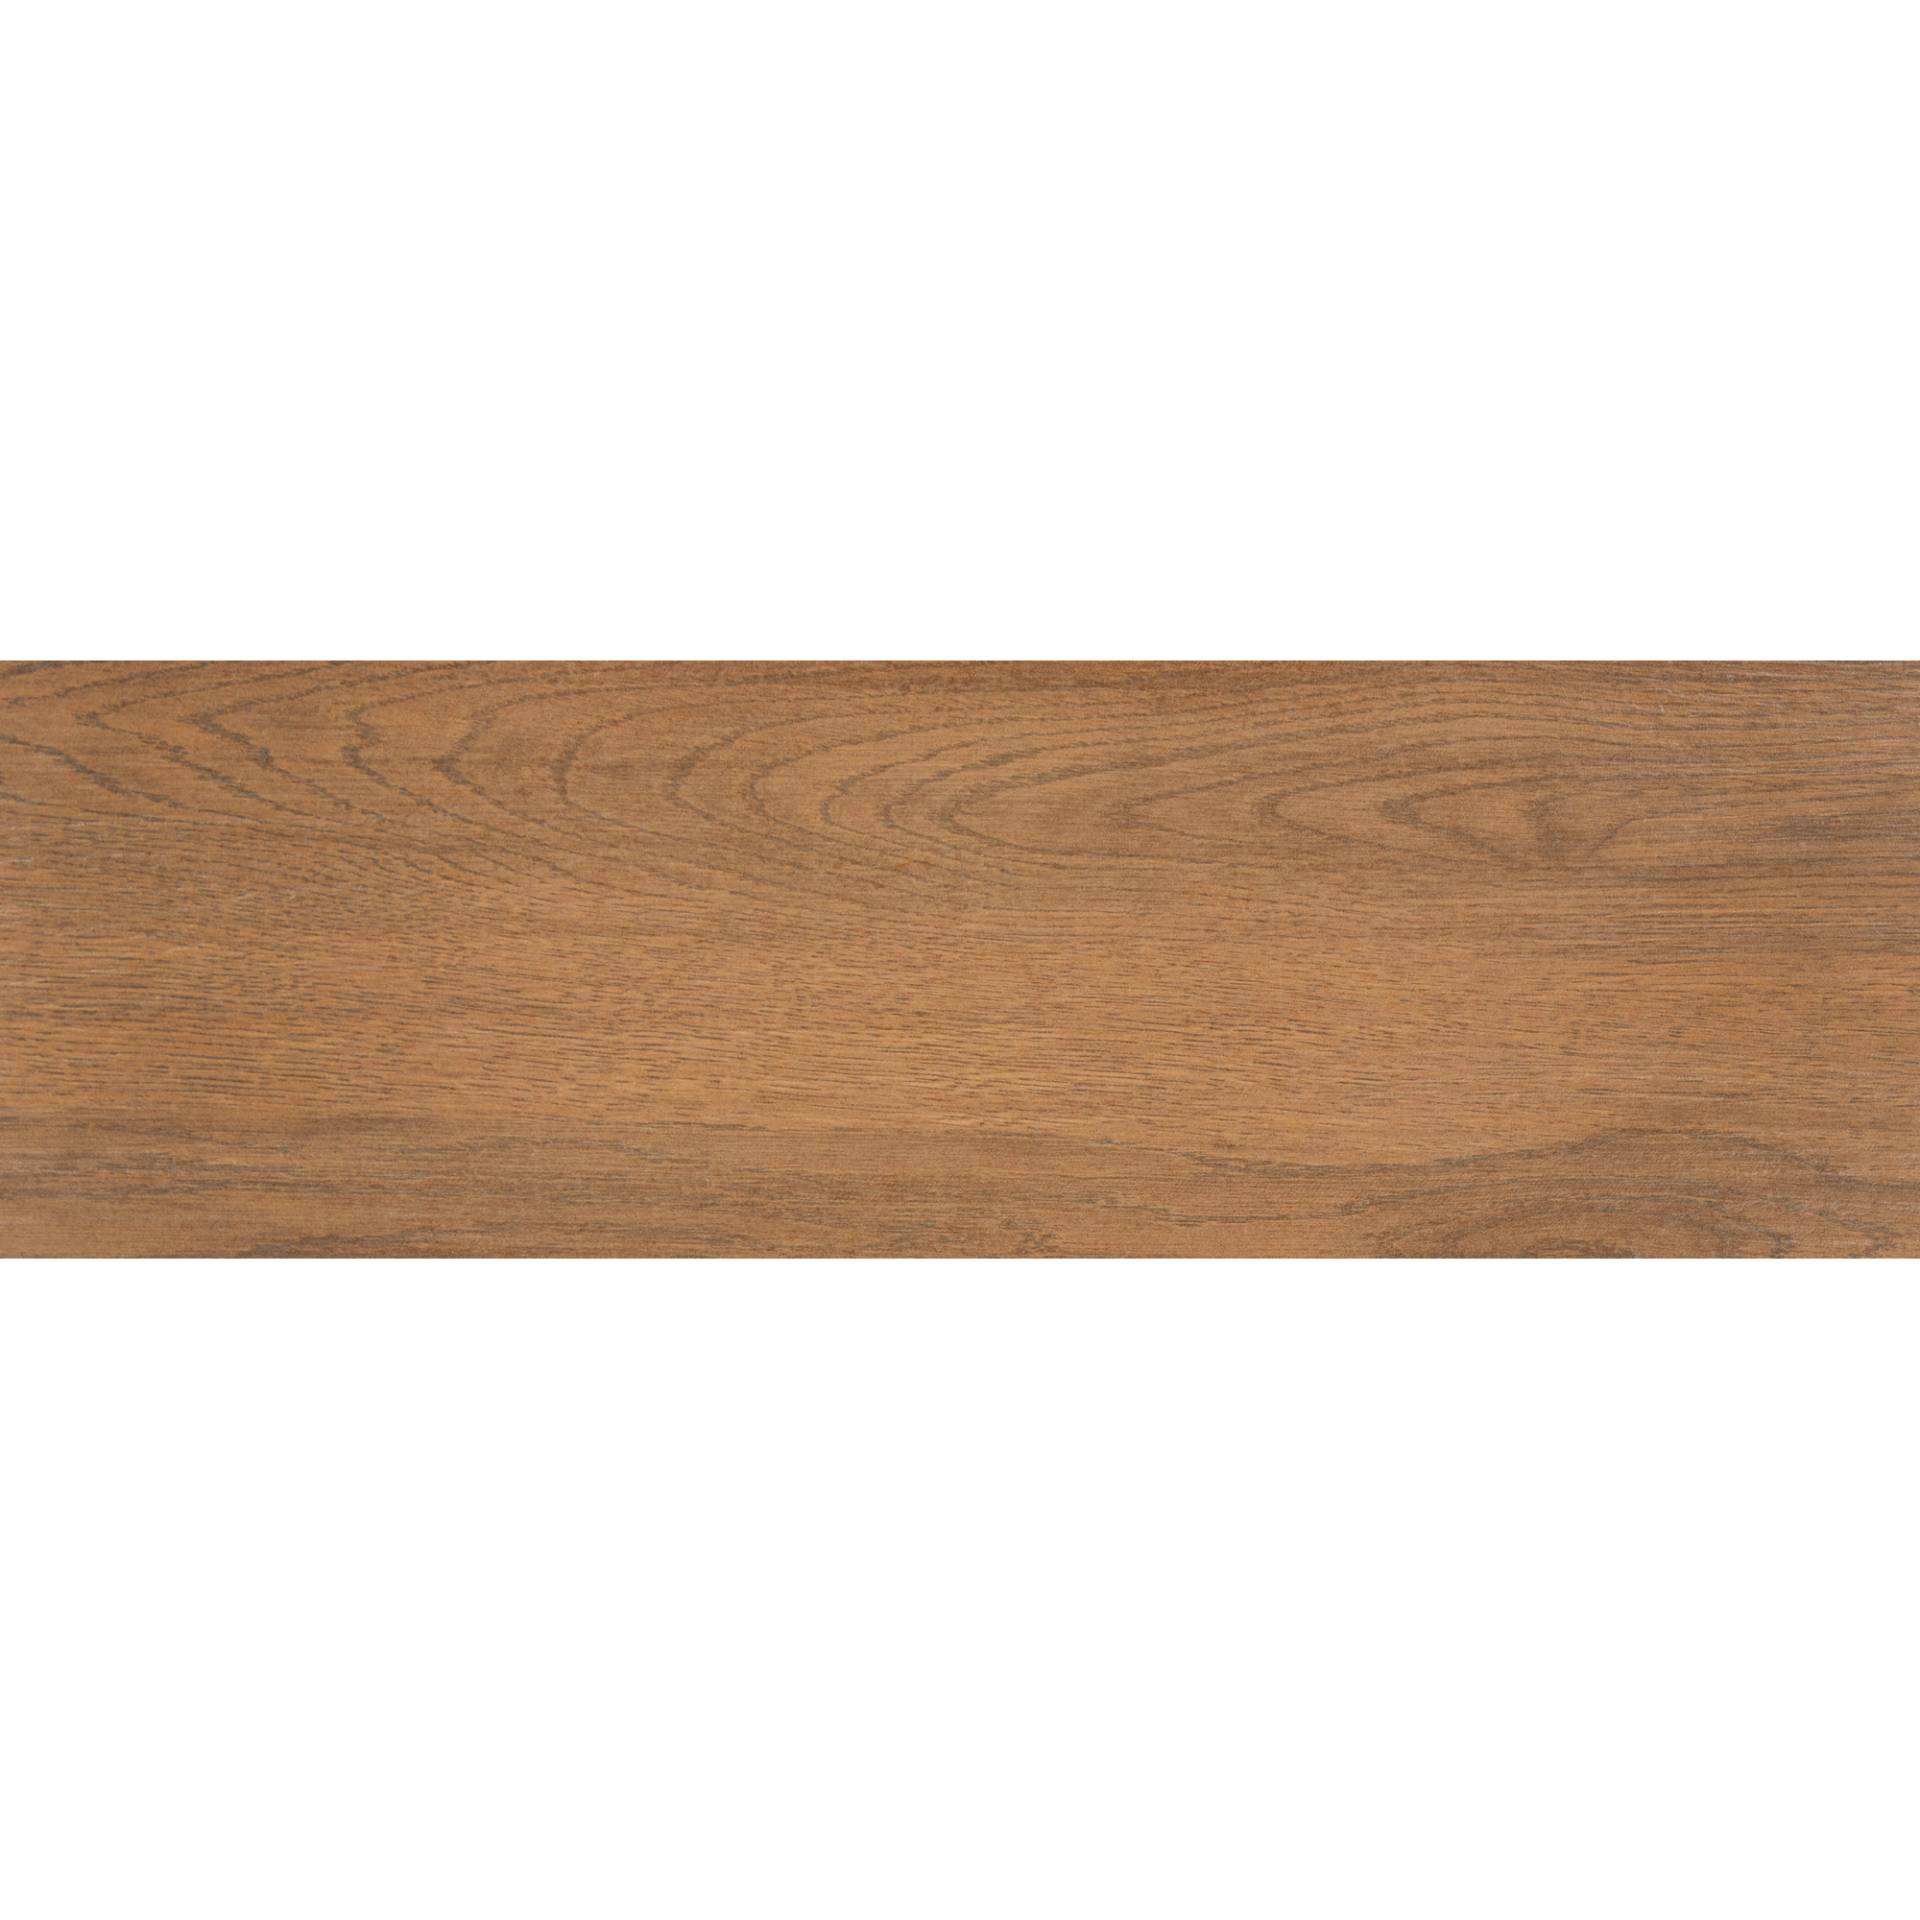 Bodenfliese 'Finnwood ' Feinsteinzeug braun 18,5 x 59,8 cm